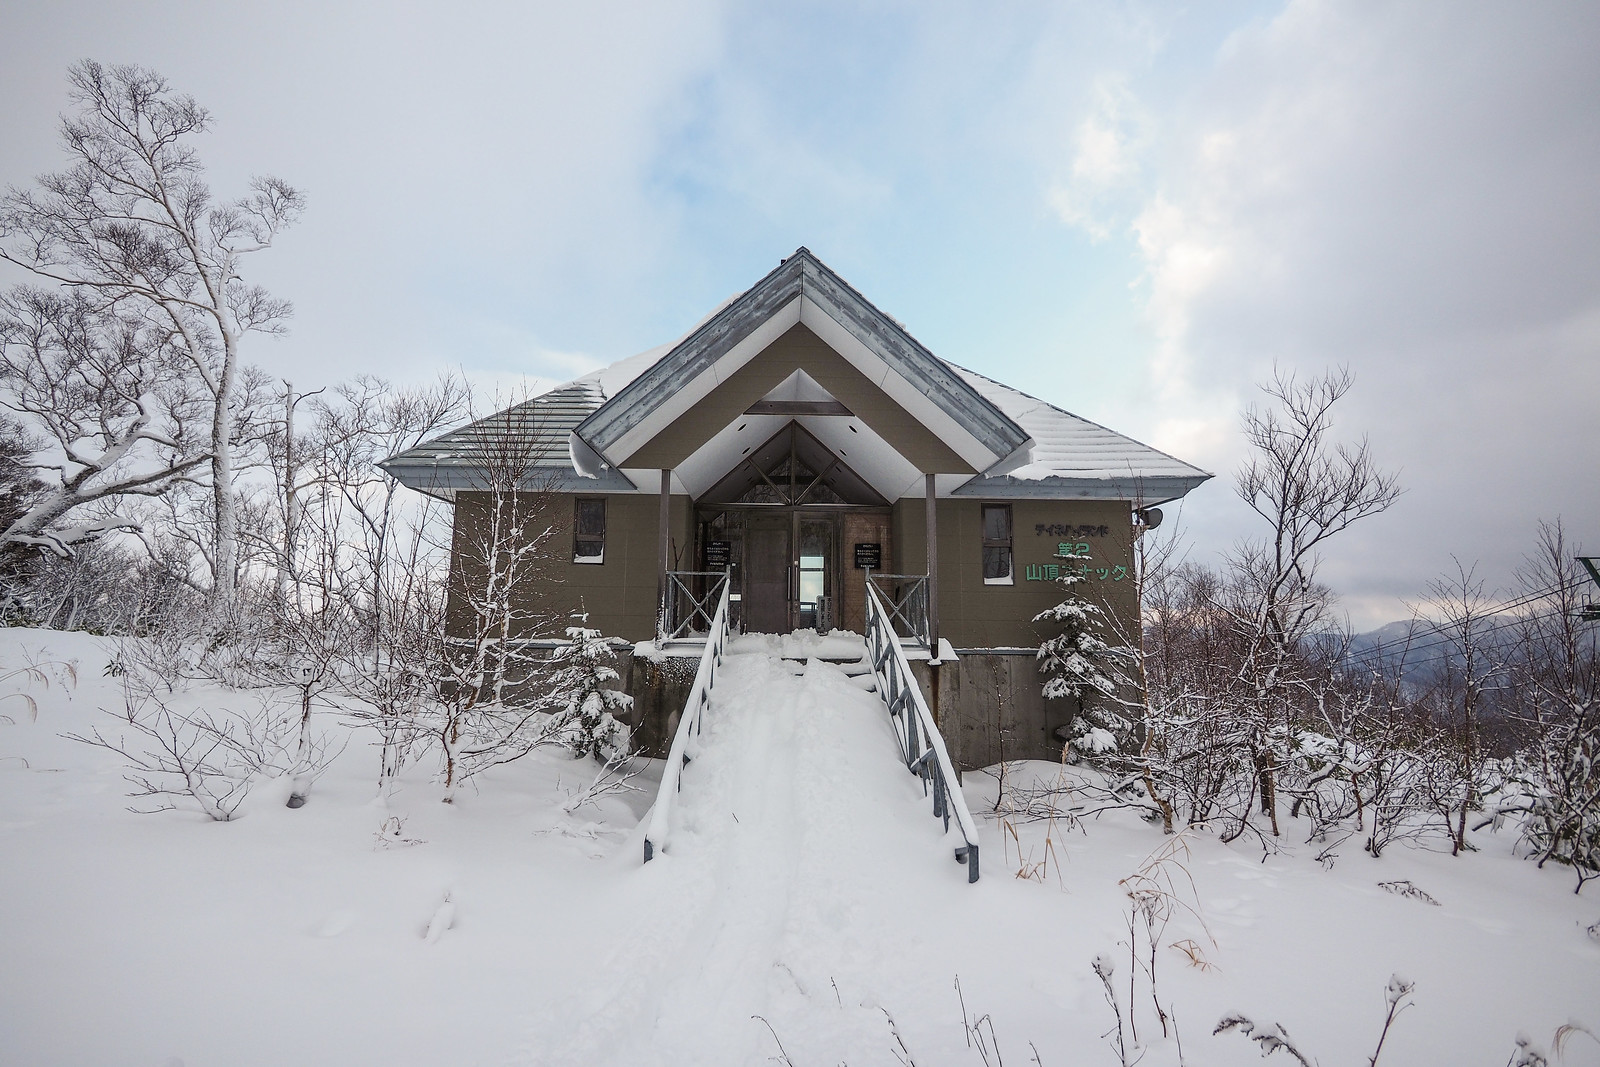 Neopara snowshoe trip (Sapporo City, Hokkaido, Japan)